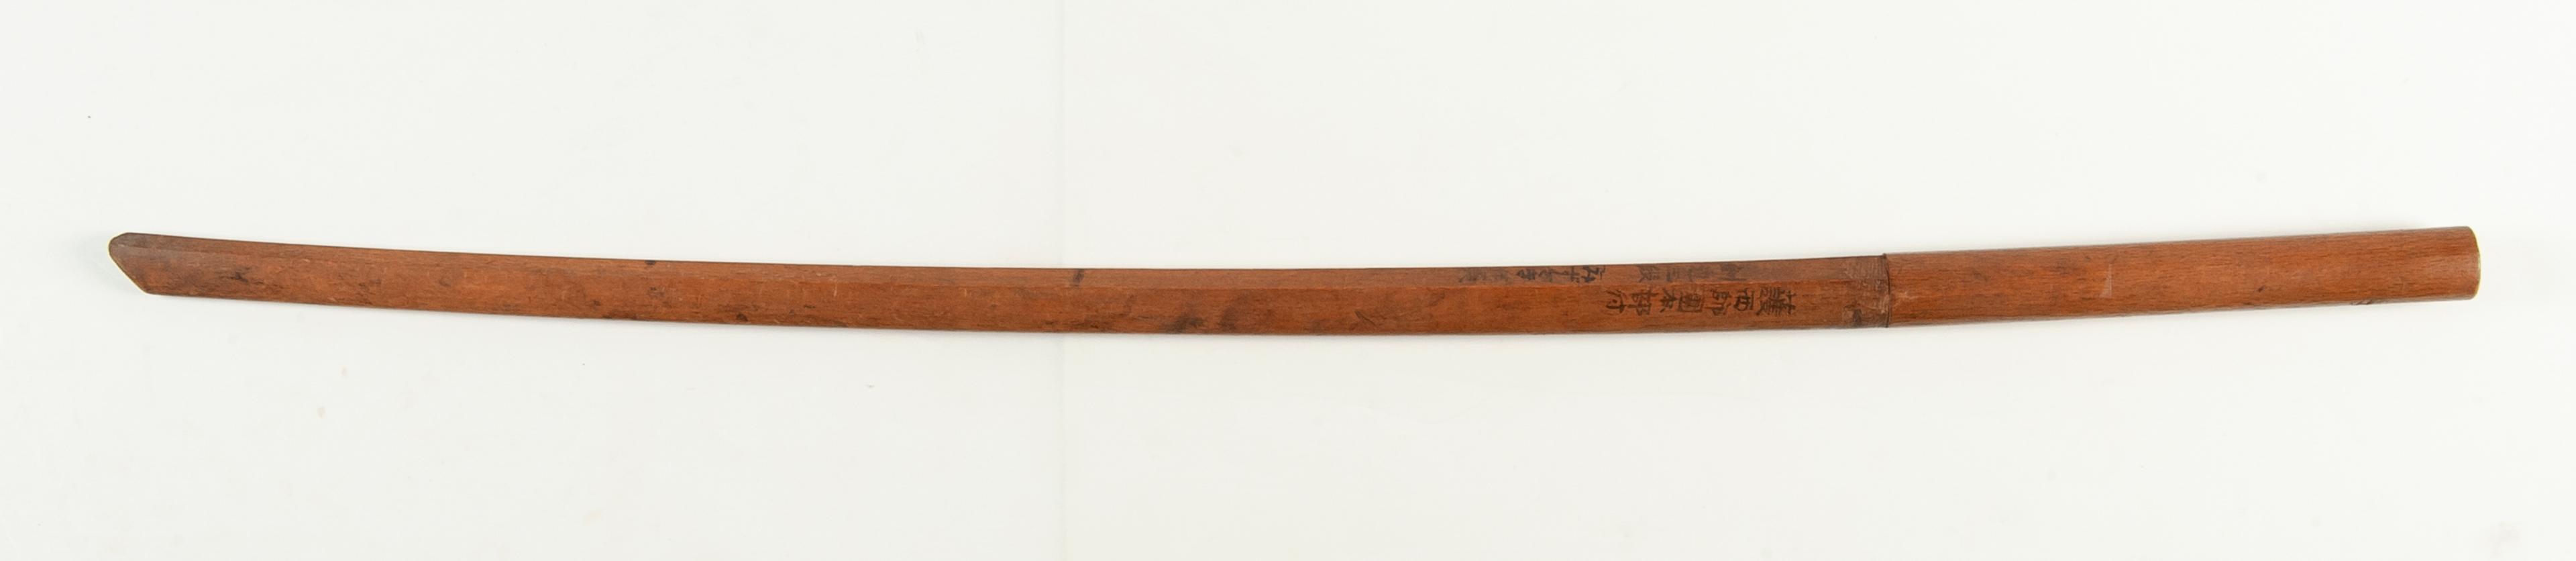 Japanese Wooden Practice Sword